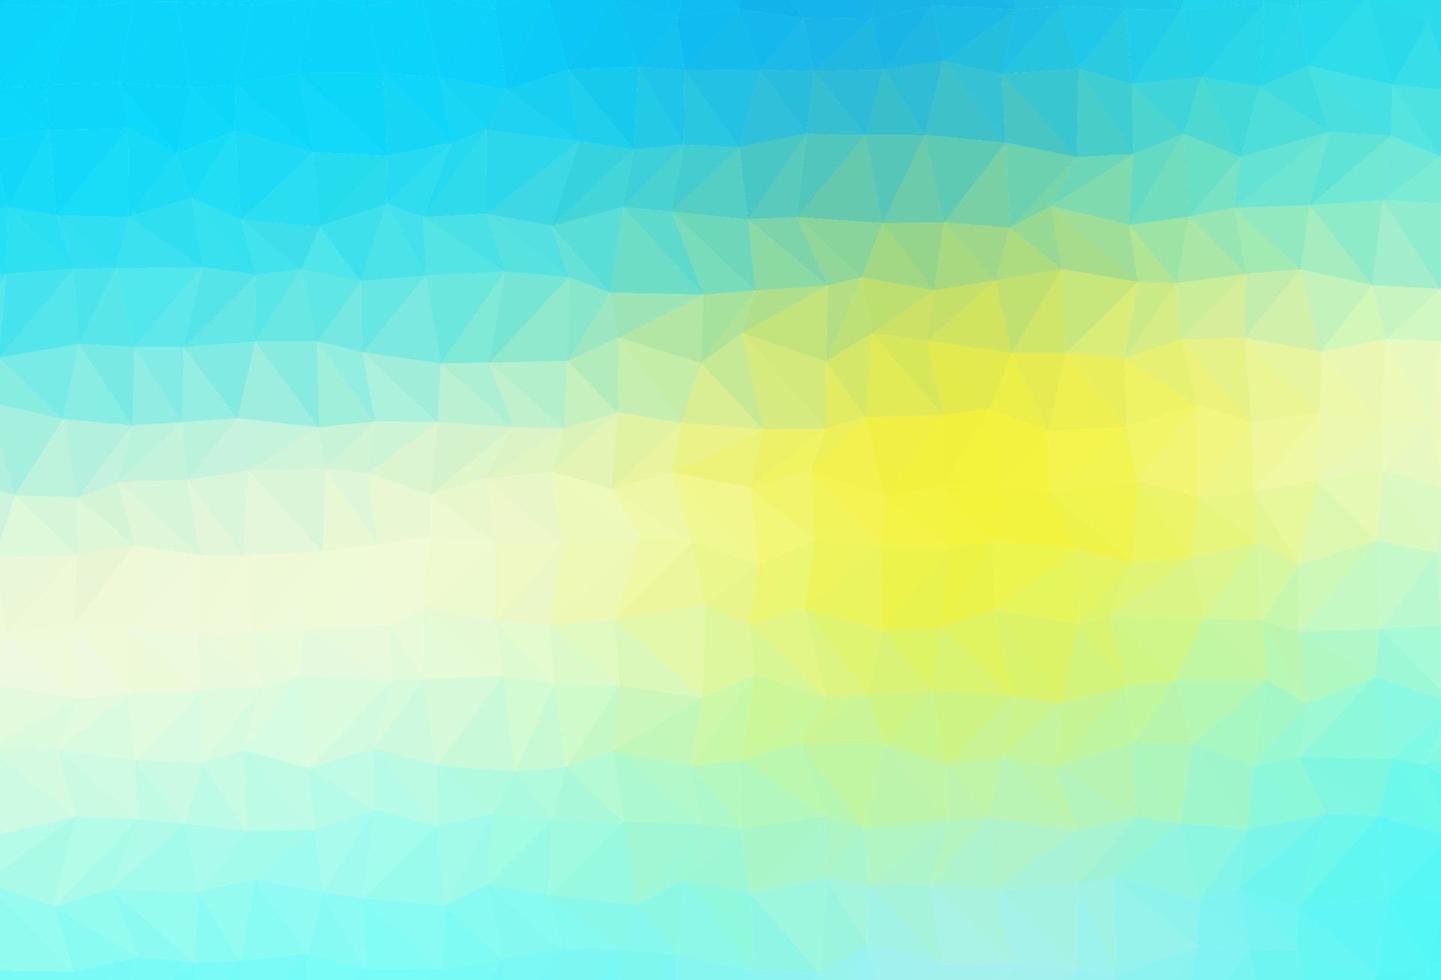 mise en page abstraite de polygone vectoriel bleu clair et jaune.